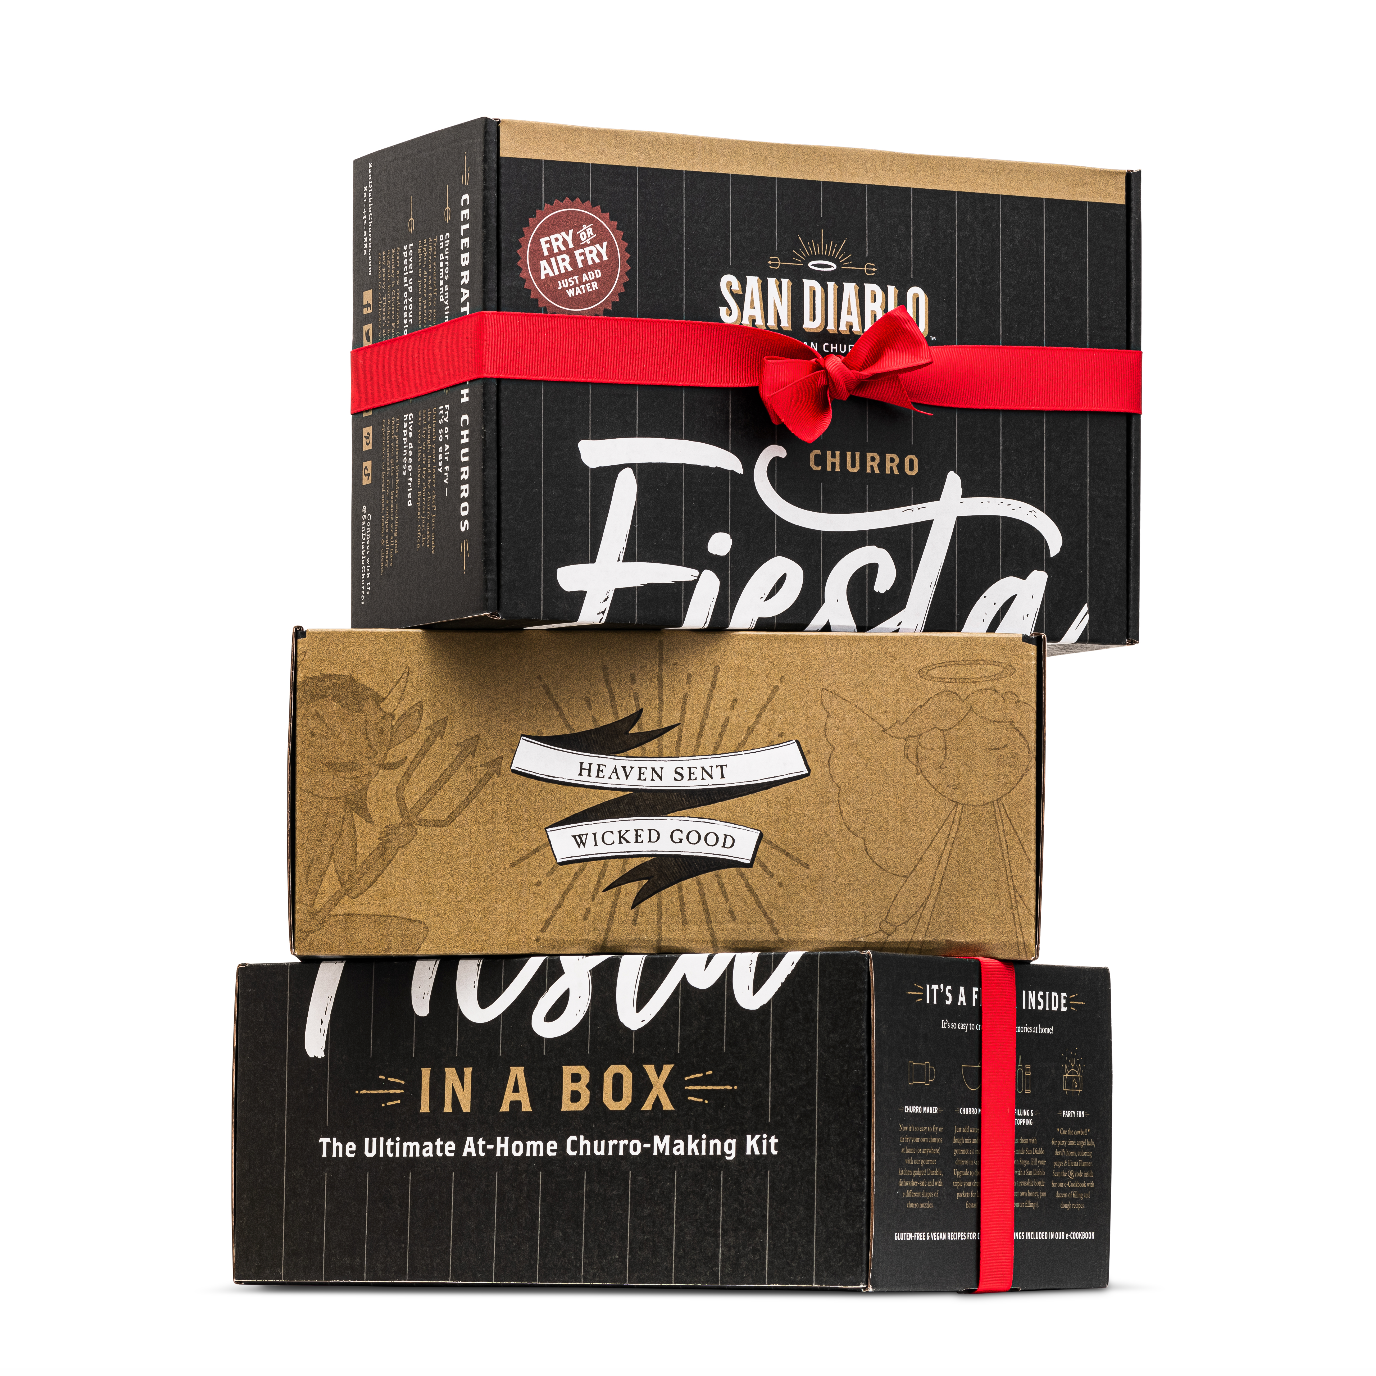 Churro Fiesta en una caja: el kit definitivo para hacer churros